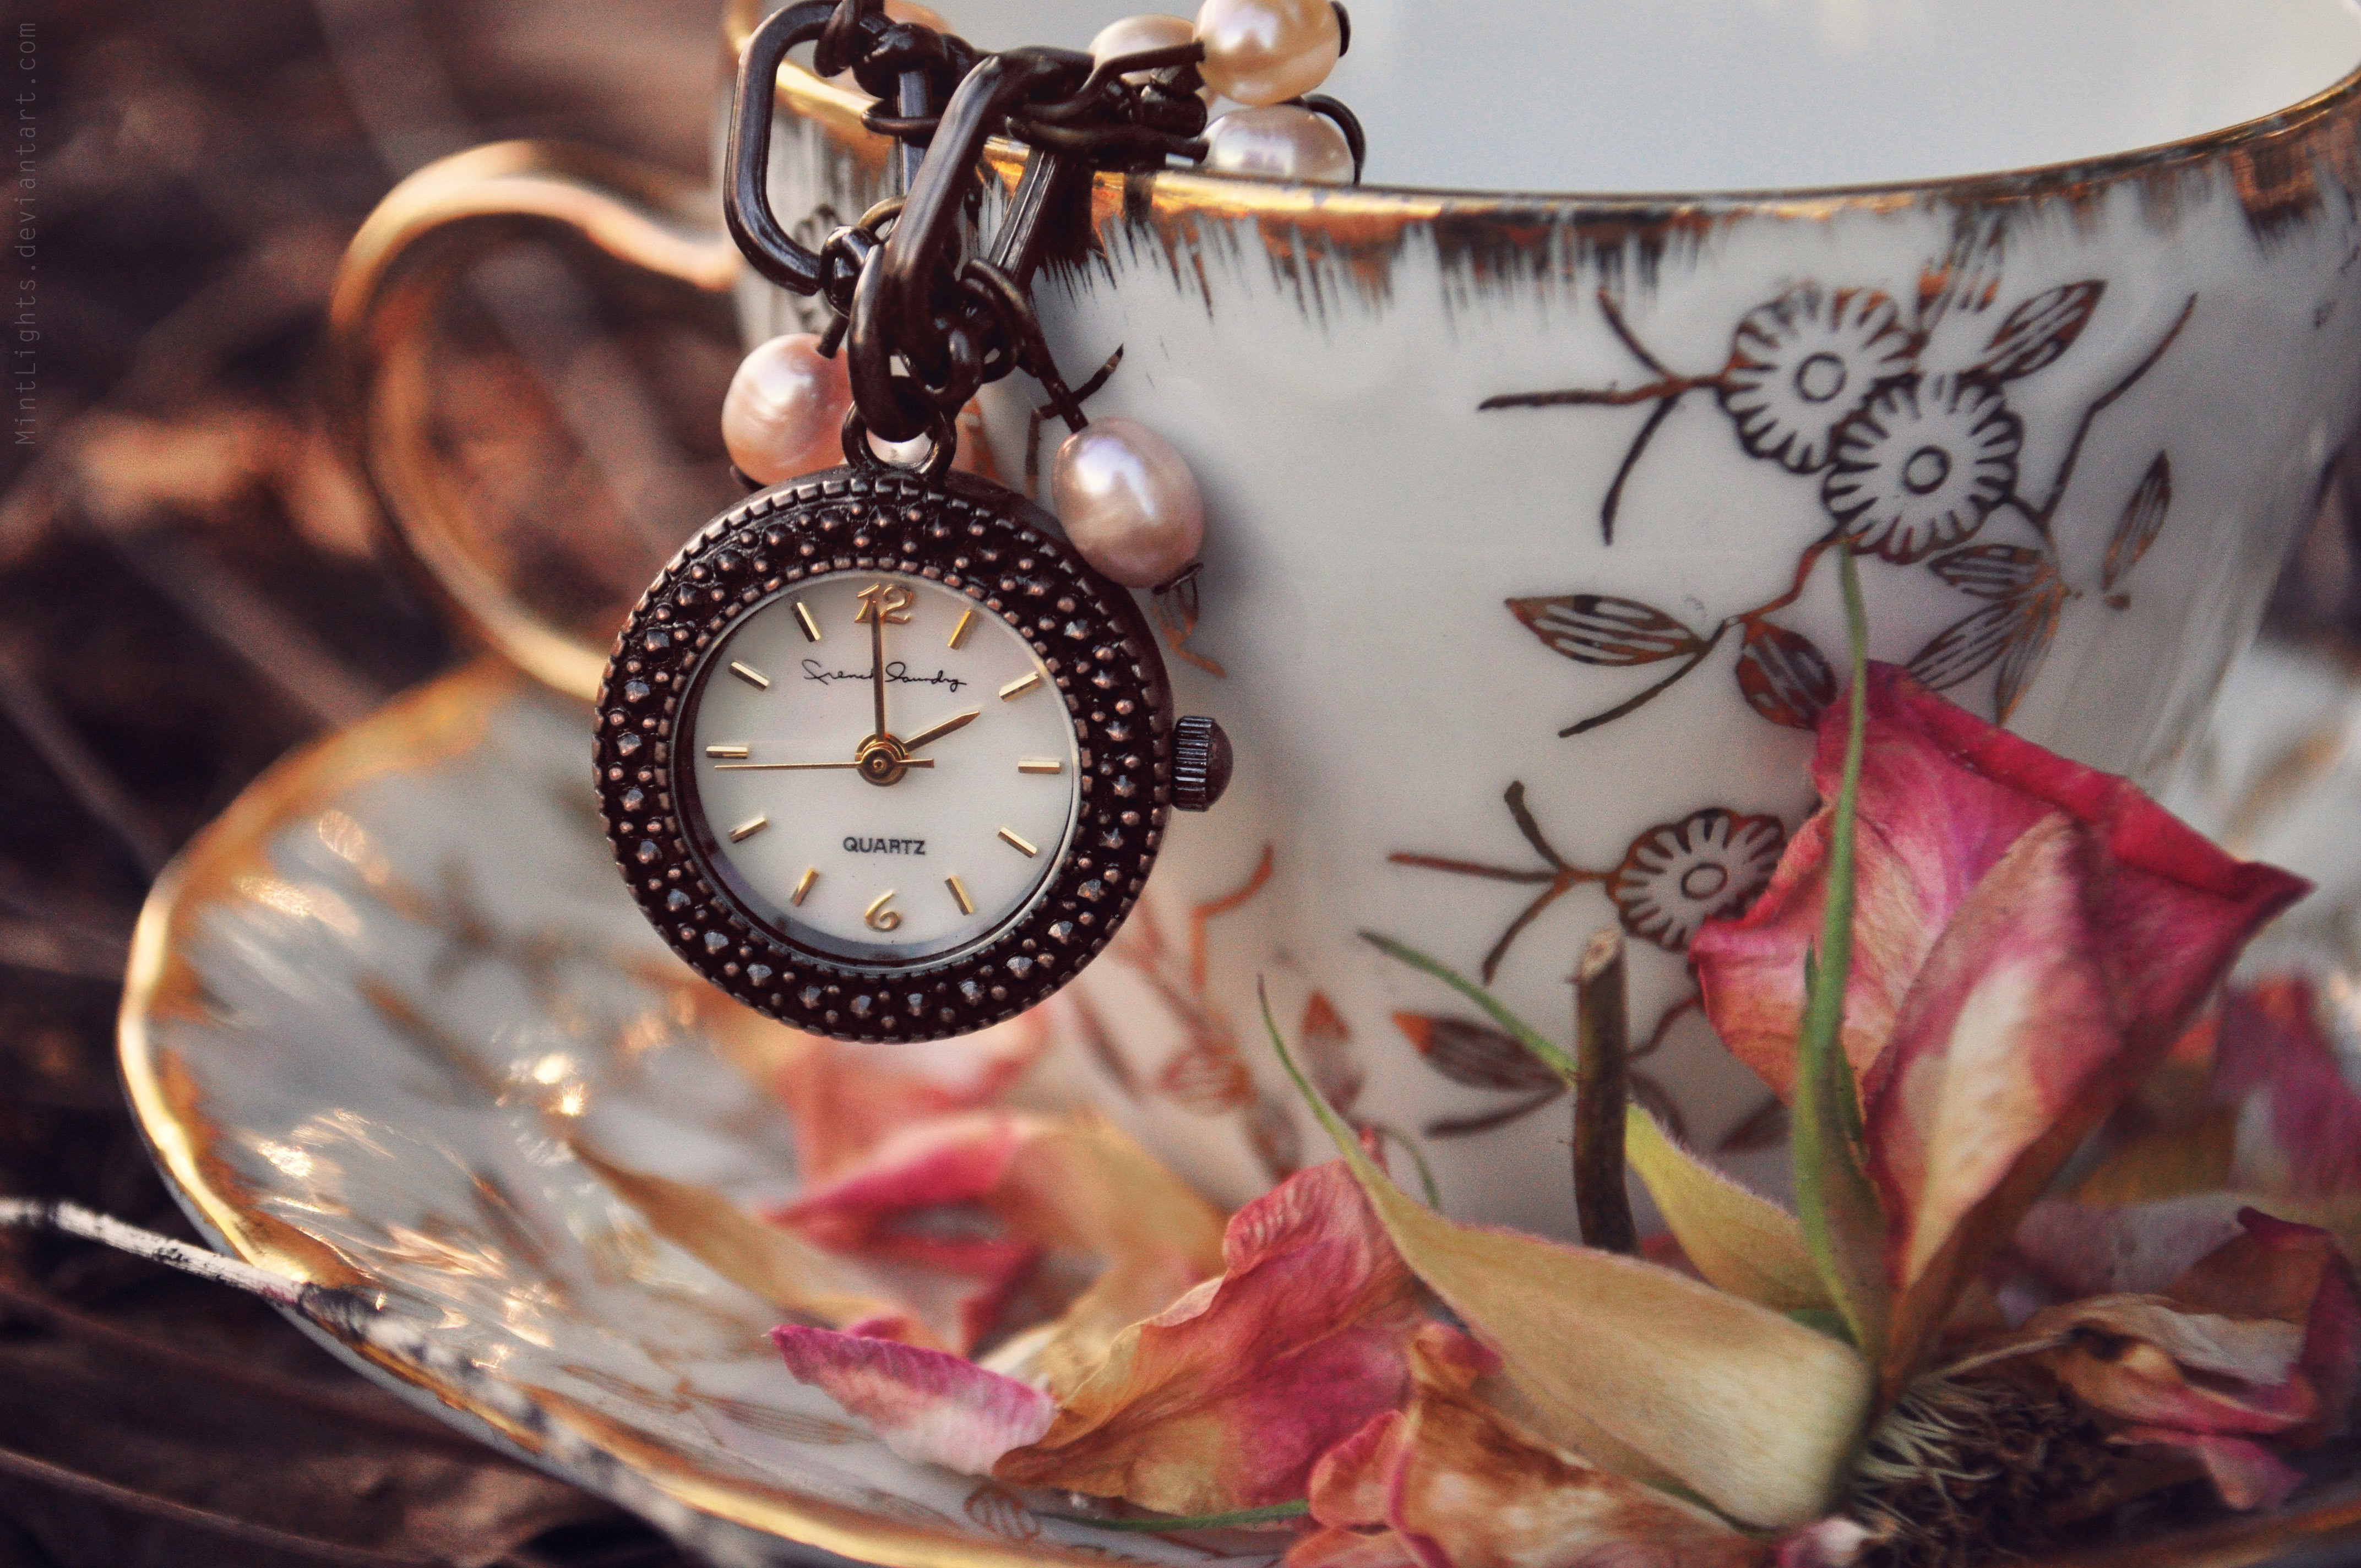 Фото обоев на часы. Красивые часы. Красивые предметы. Часы на красивом фоне. Часы "цветок".